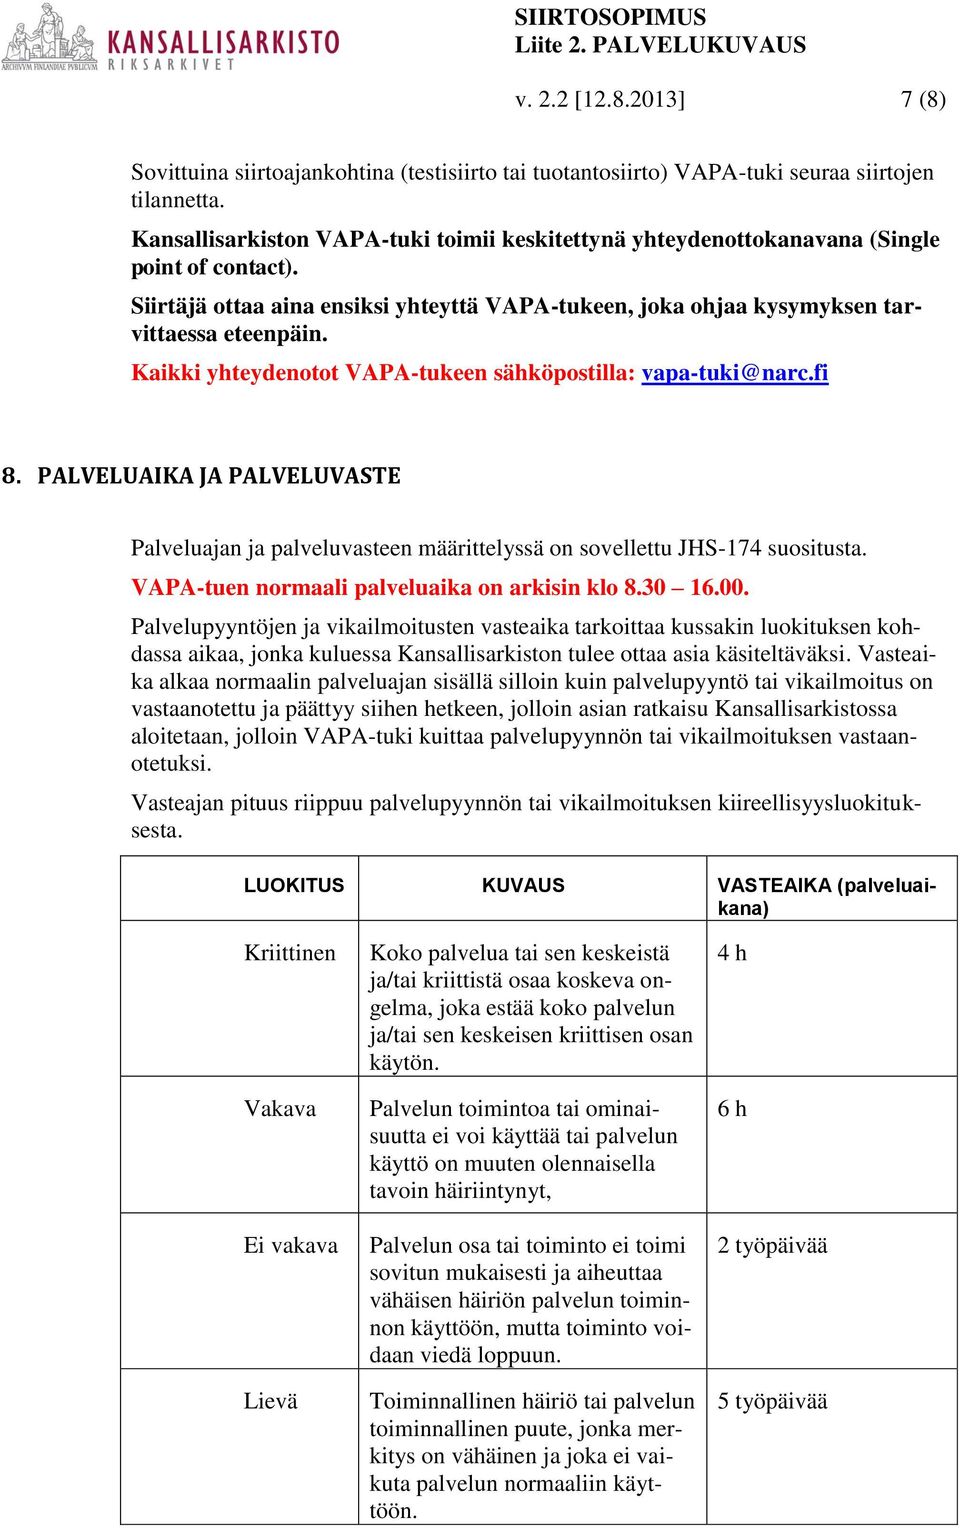 Kaikki yhteydenotot VAPA-tukeen sähköpostilla: vapa-tuki@narc.fi 8. PALVELUAIKA JA PALVELUVASTE Palveluajan ja palveluvasteen määrittelyssä on sovellettu JHS-174 suositusta.